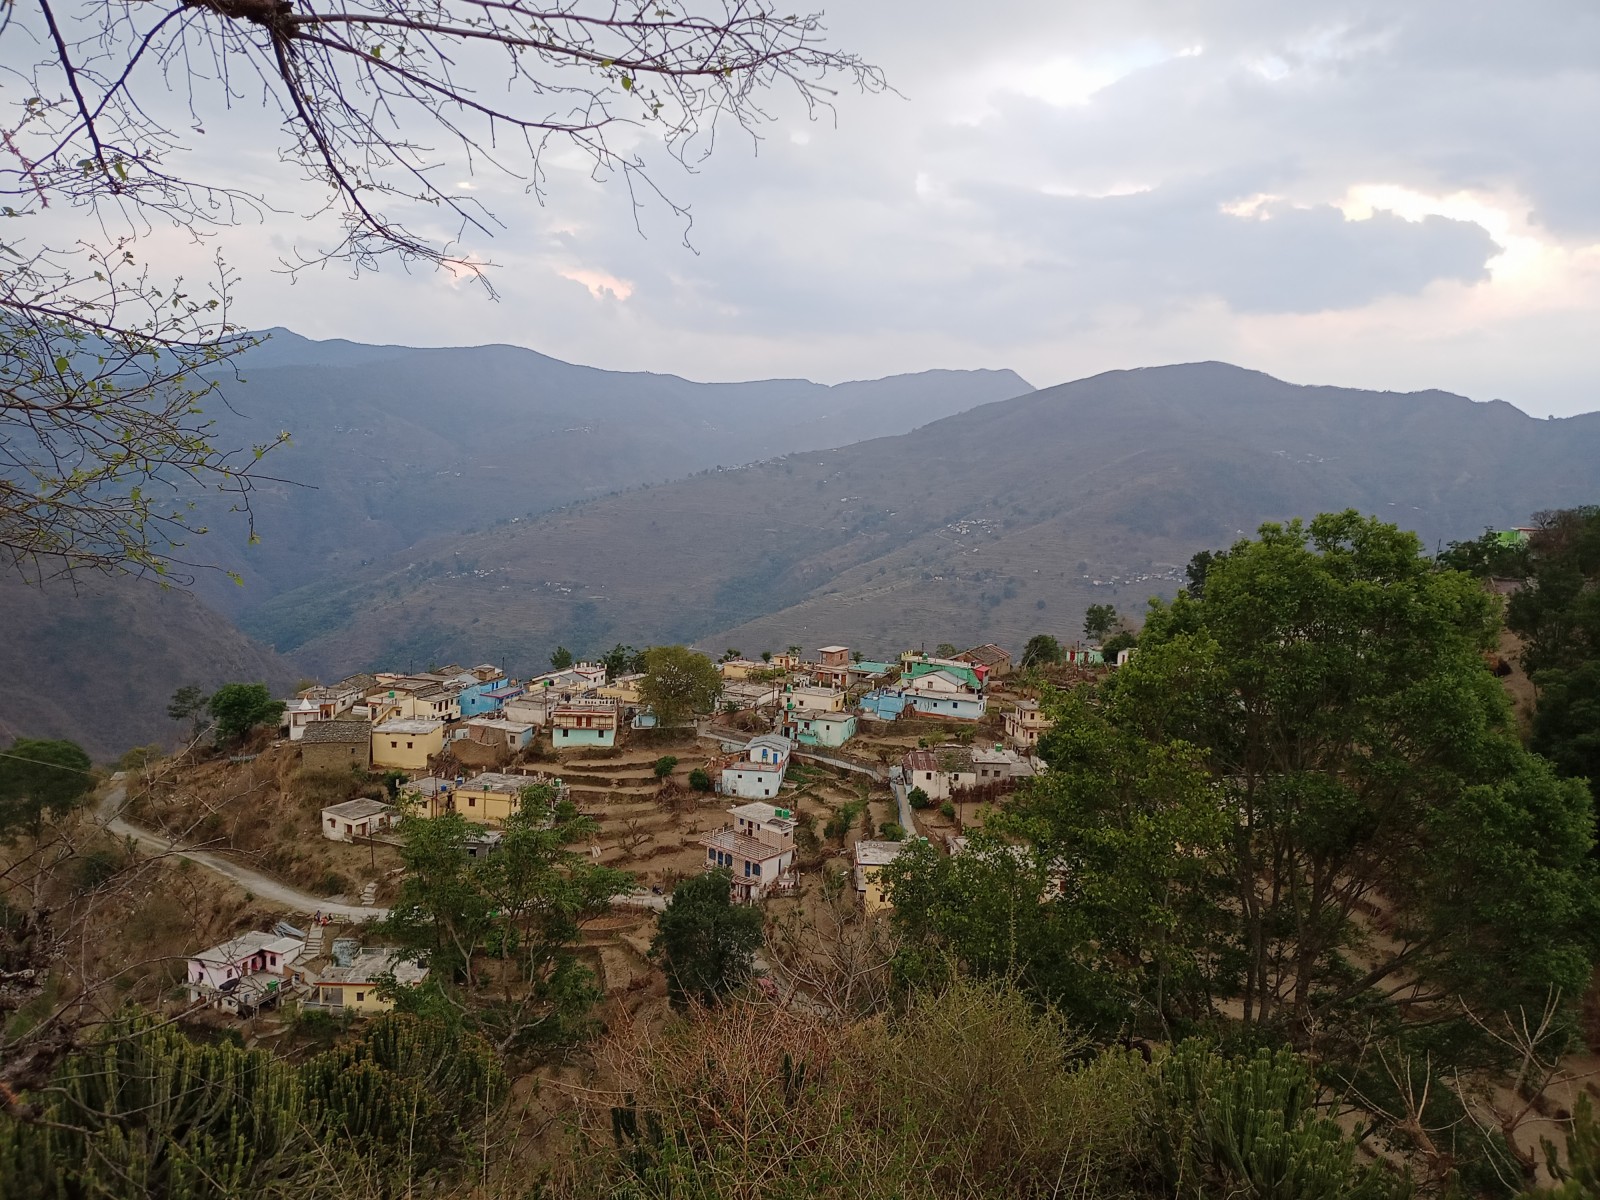 Bakrora village, Pauri Garhwal